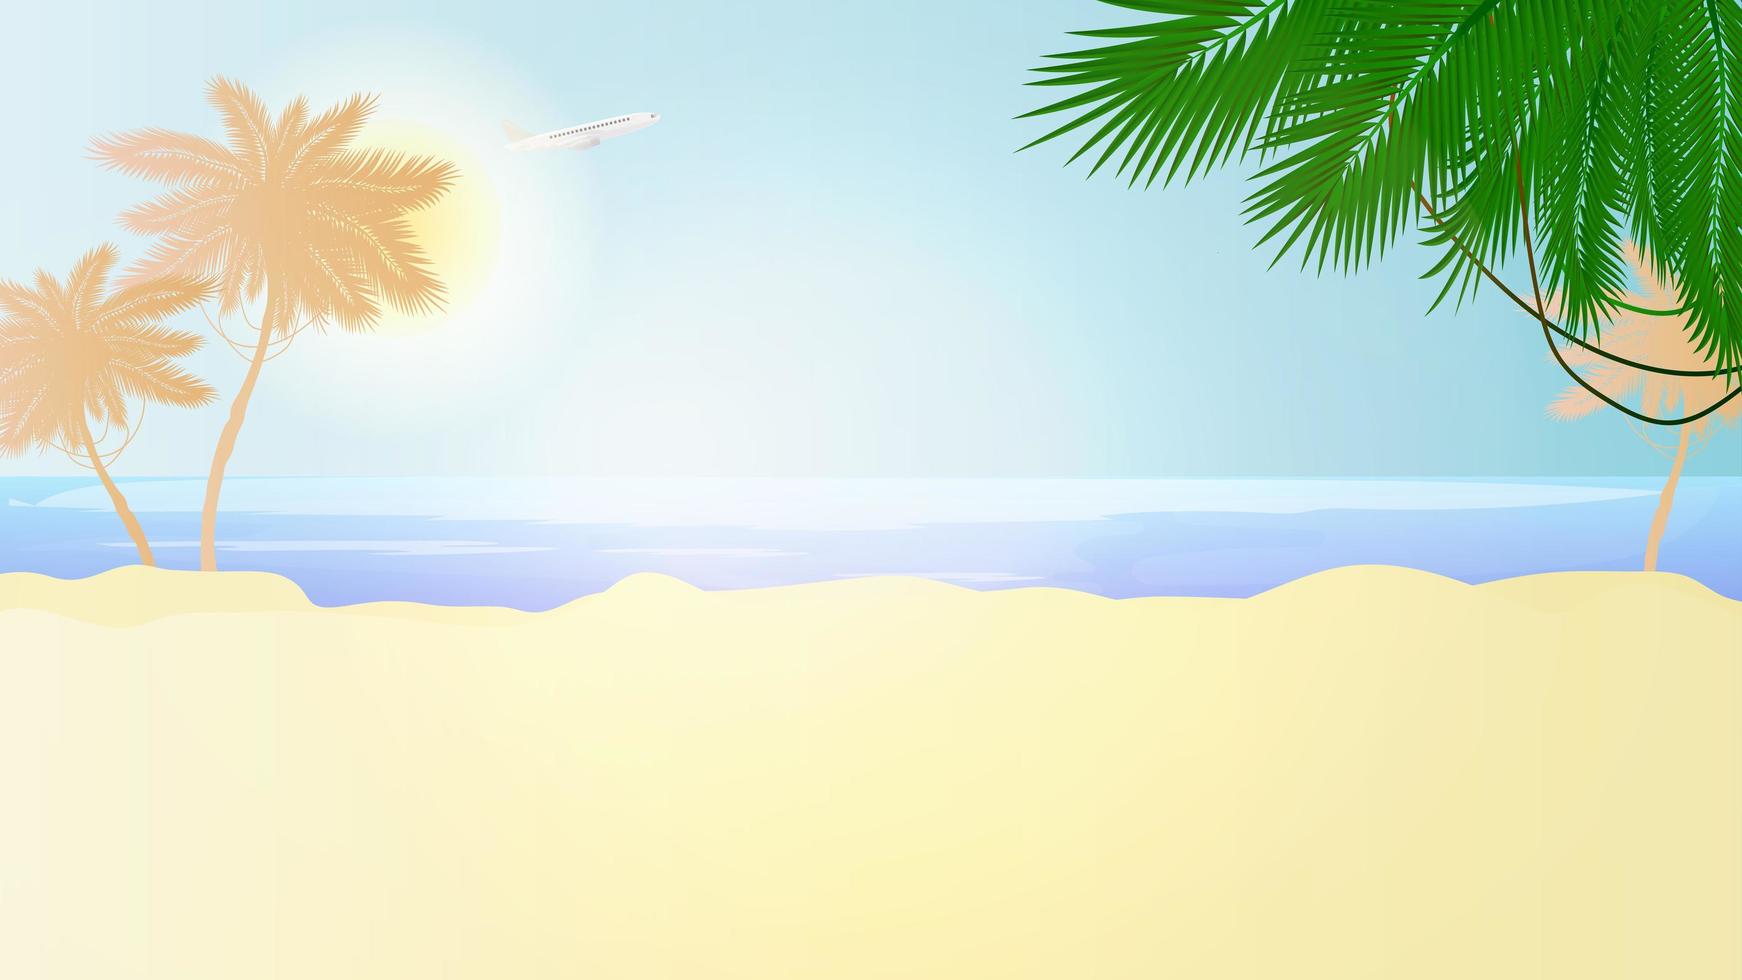 zonnig strand in een vlakke stijl. palmbomen, zand, zee, lucht en sun.illustration met plaats voor tekst. vector. vector